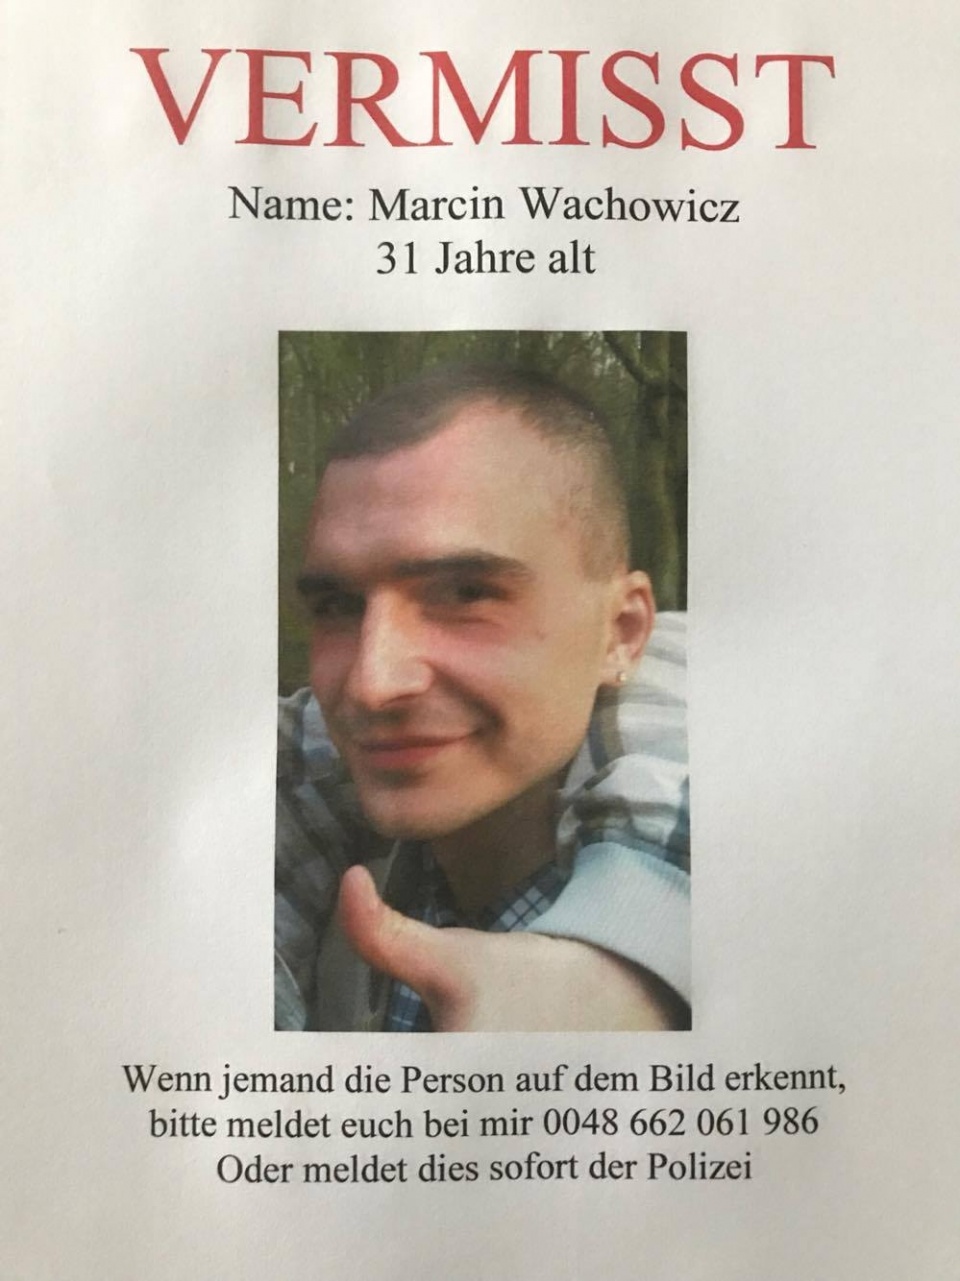 Rodzina, znajomi oraz polska i niemiecka policja szukają zaginionego Marcina Wachowicza. Fot. Słuchacz